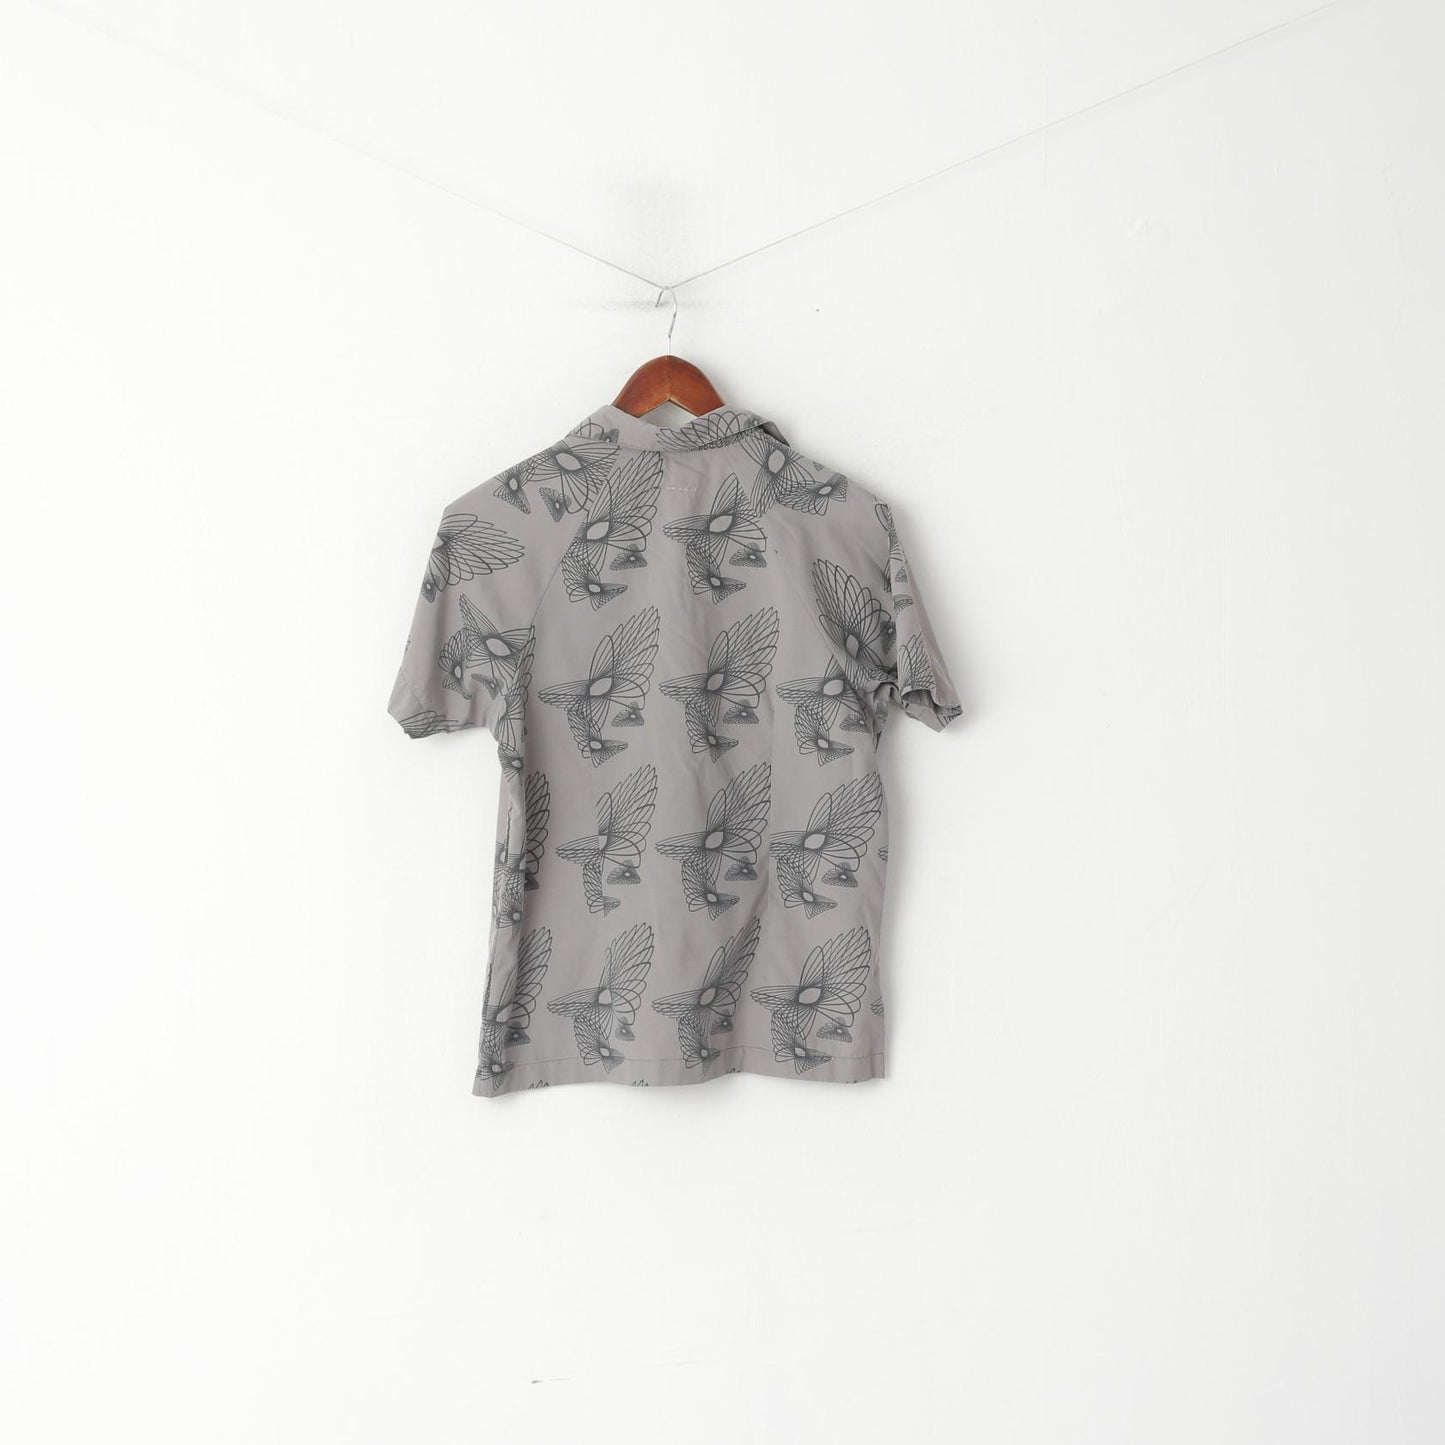 Mammut Camicia casual da donna L. Top da passeggio turistico vintage stampato in nylon grigio